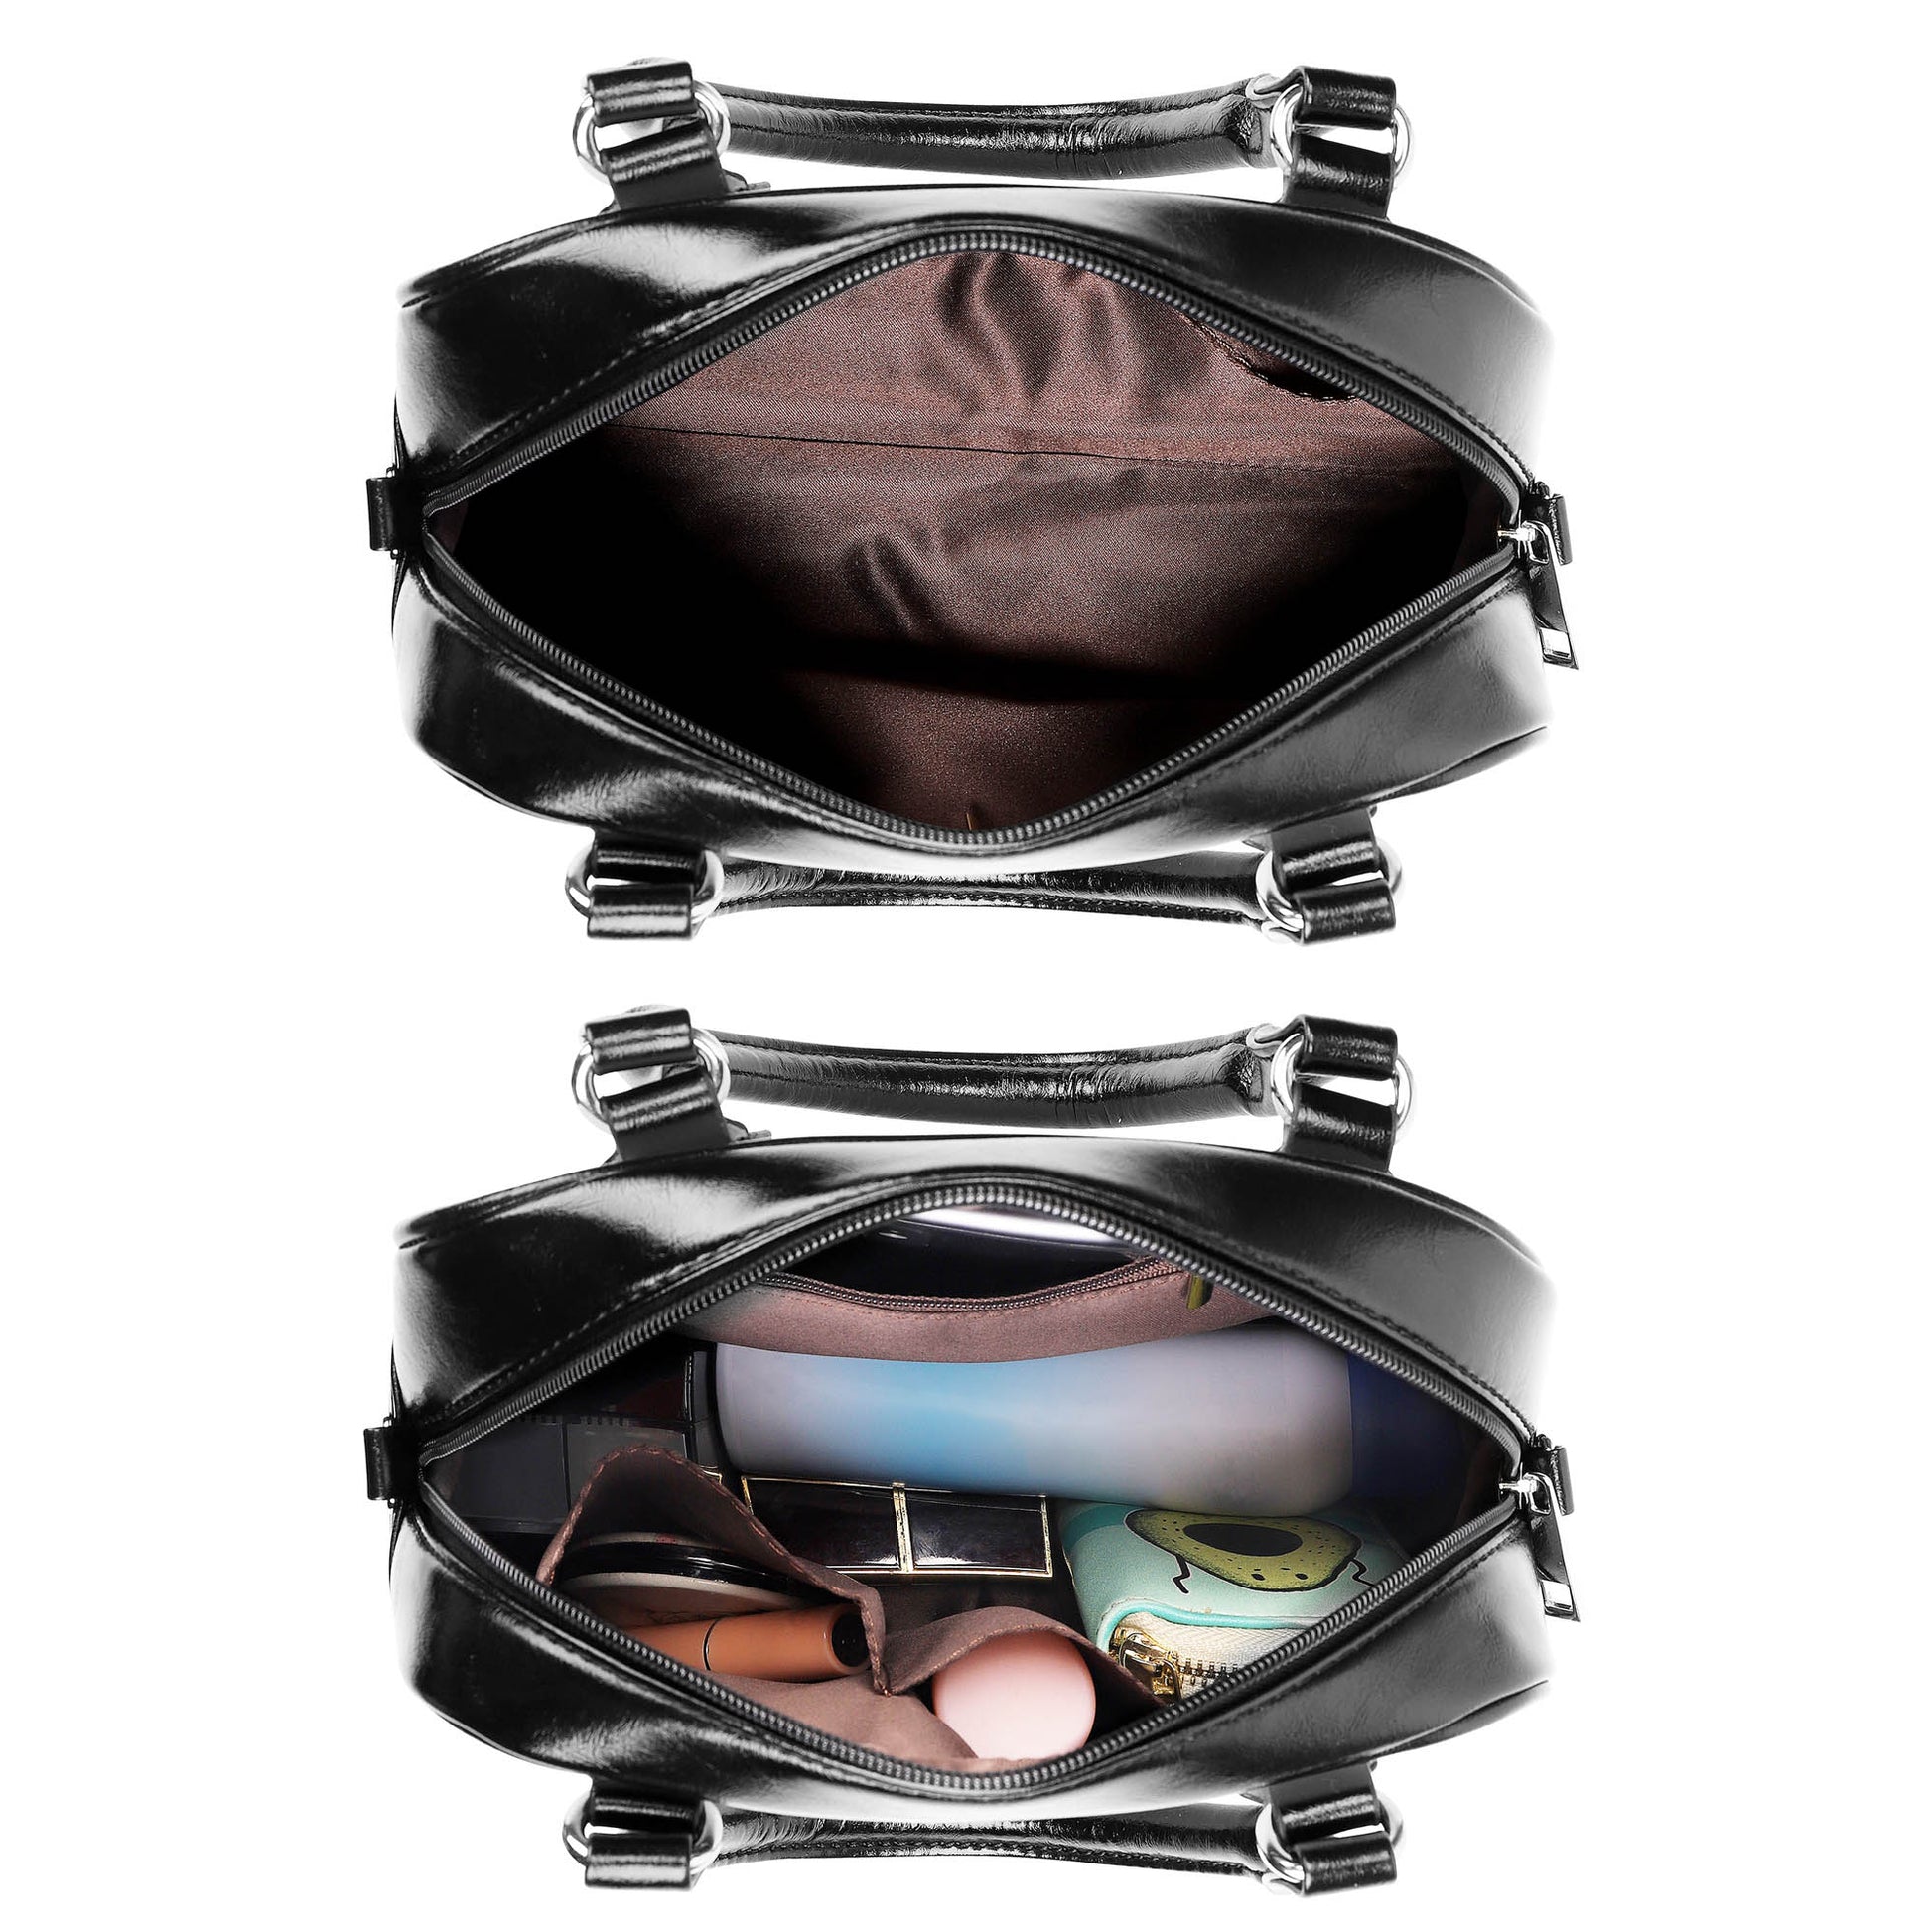 Ochterlony Tartan Shoulder Handbags with Family Crest - Tartanvibesclothing